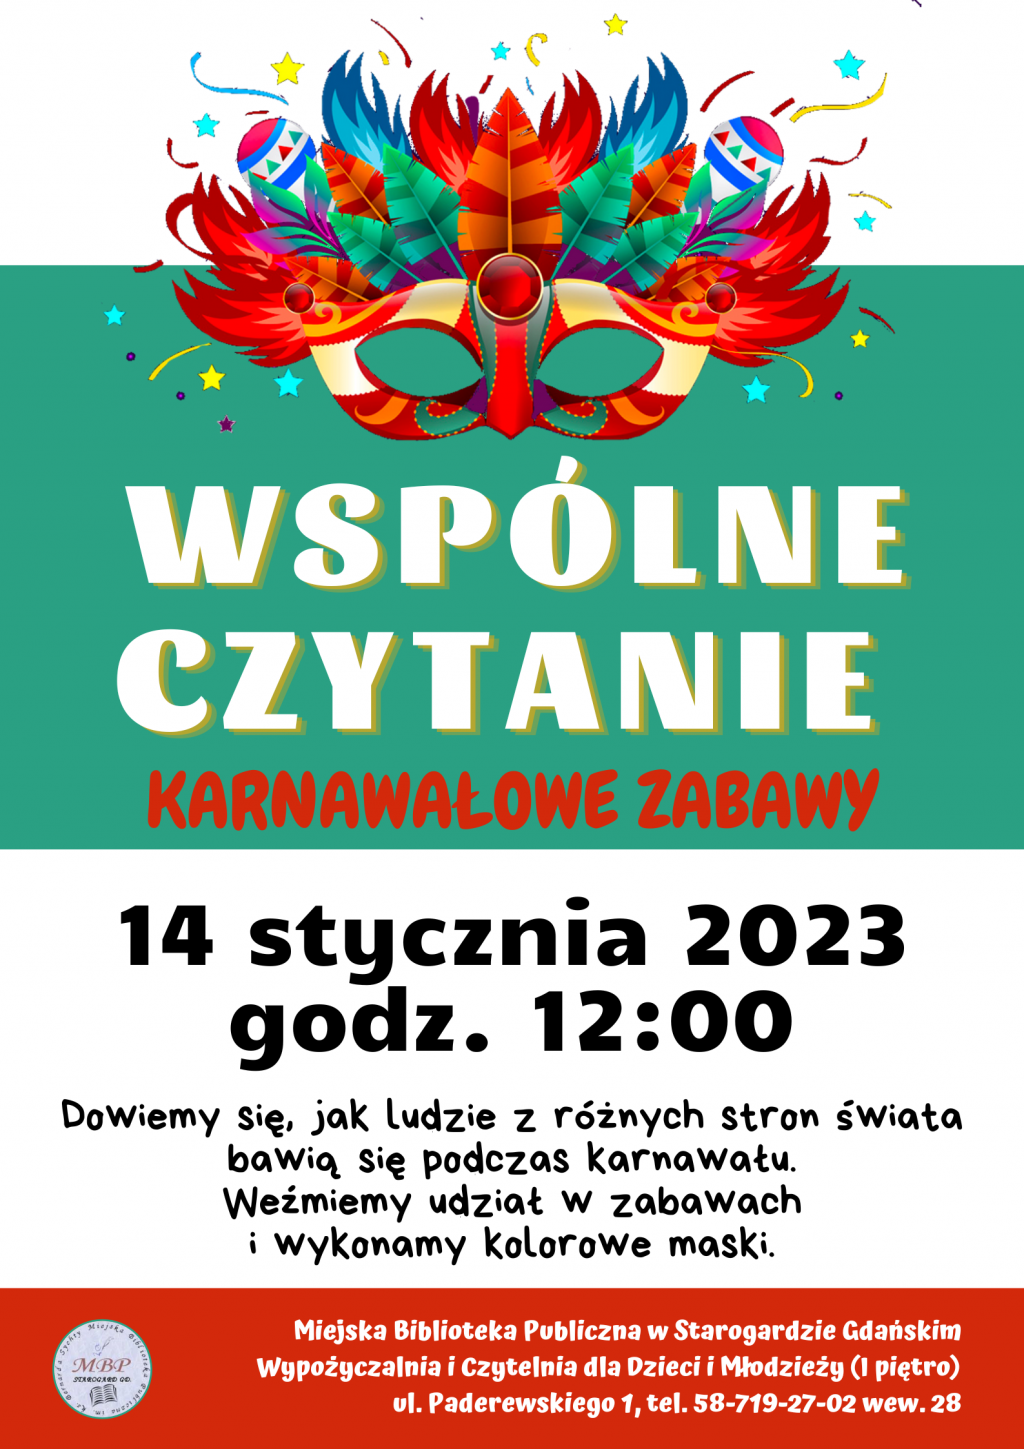 Plakat informujący o wydarzeniu: WSPÓLNE CZYTANIE KARNAWAŁOWE ZABAWY 14 stycznia 2023 godz. 12:00 Dowiemy się, jak ludzie z różnych stron świata bawią się podczas karnawału. Weźmiemy udział w zabawach i wykonamy kolorowe maski. Miejska Biblioteka Publiczna w Starogardzie Gdańskim, Wypożyczalnia Czytelnia dla Dzieci Młodzieży (I piętro), Paderewskiego 1, tel. 58-719-27-02 wew. 28. Na plakacie grafika z karnawałową maską.